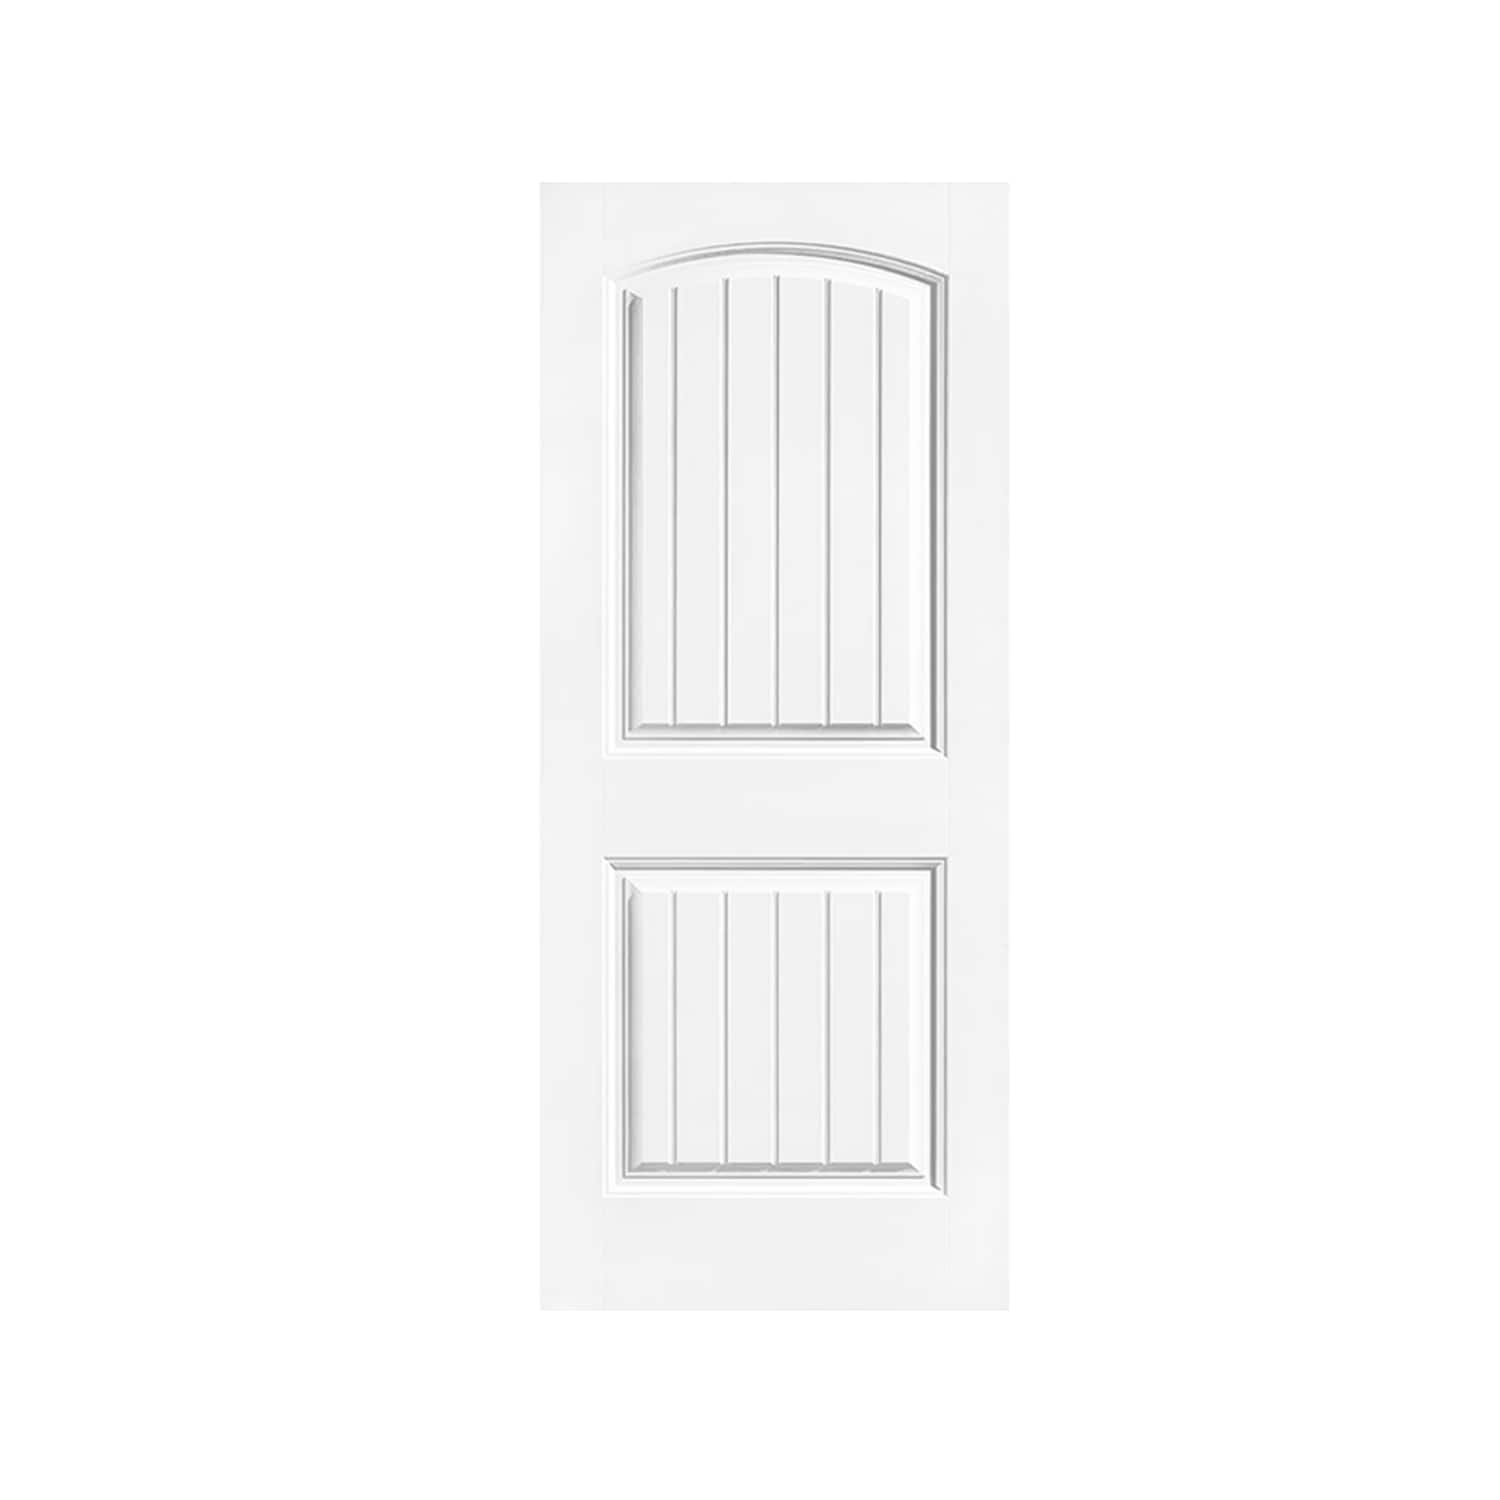 CALHOME 30-in x 80-in White Primed MDF Single Barn Door | PK-2PANEL-CB-30